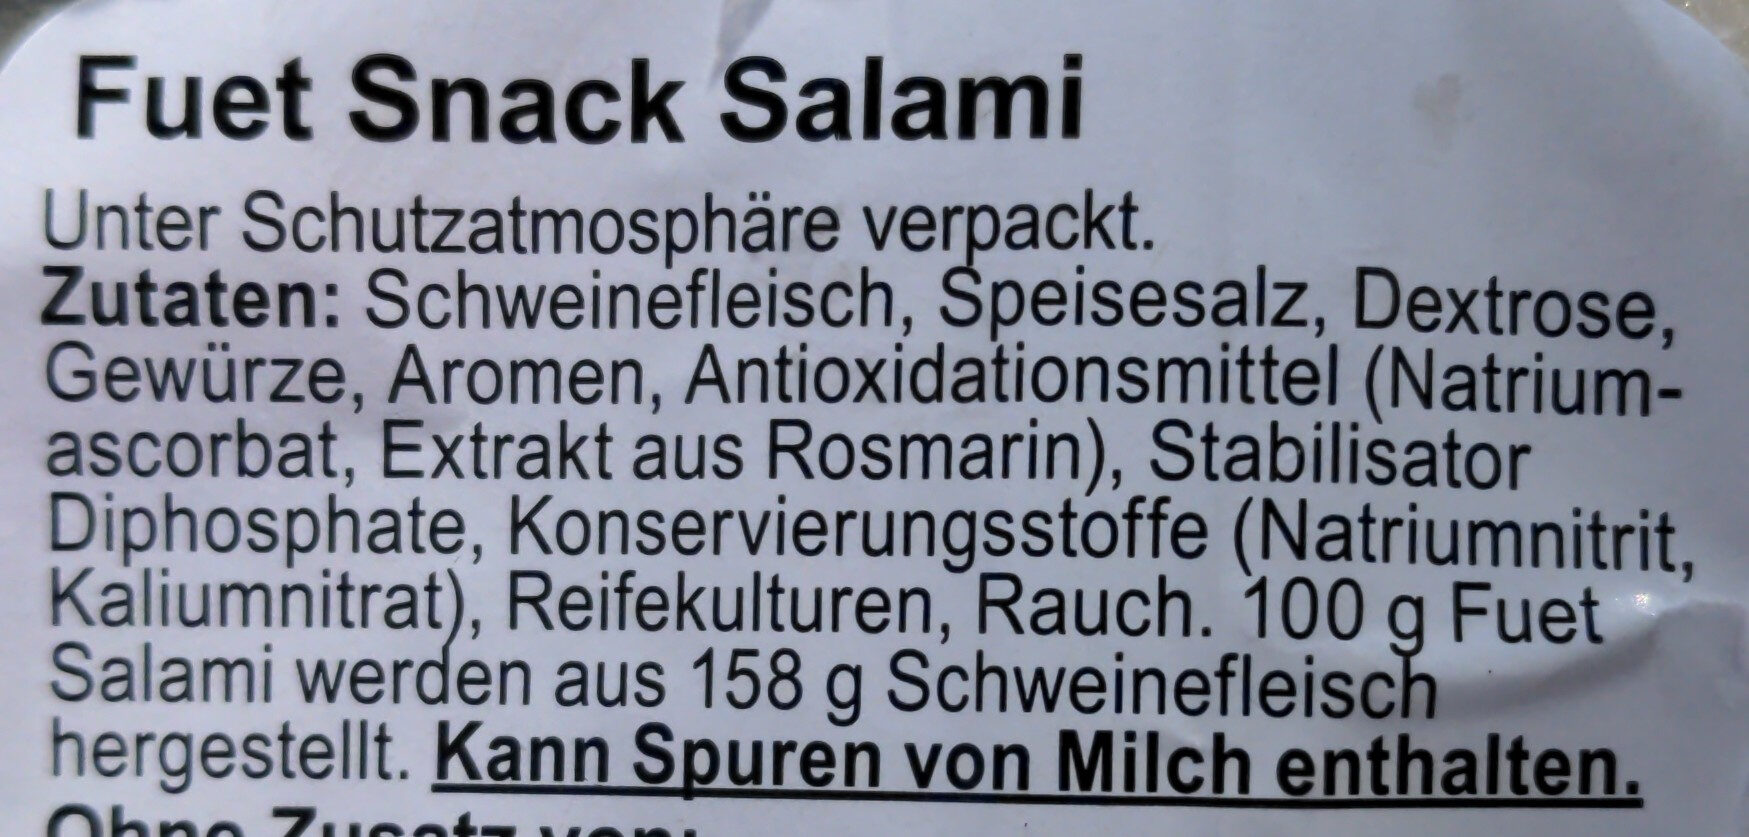 Fuet Snack Salami - Ingredients - de